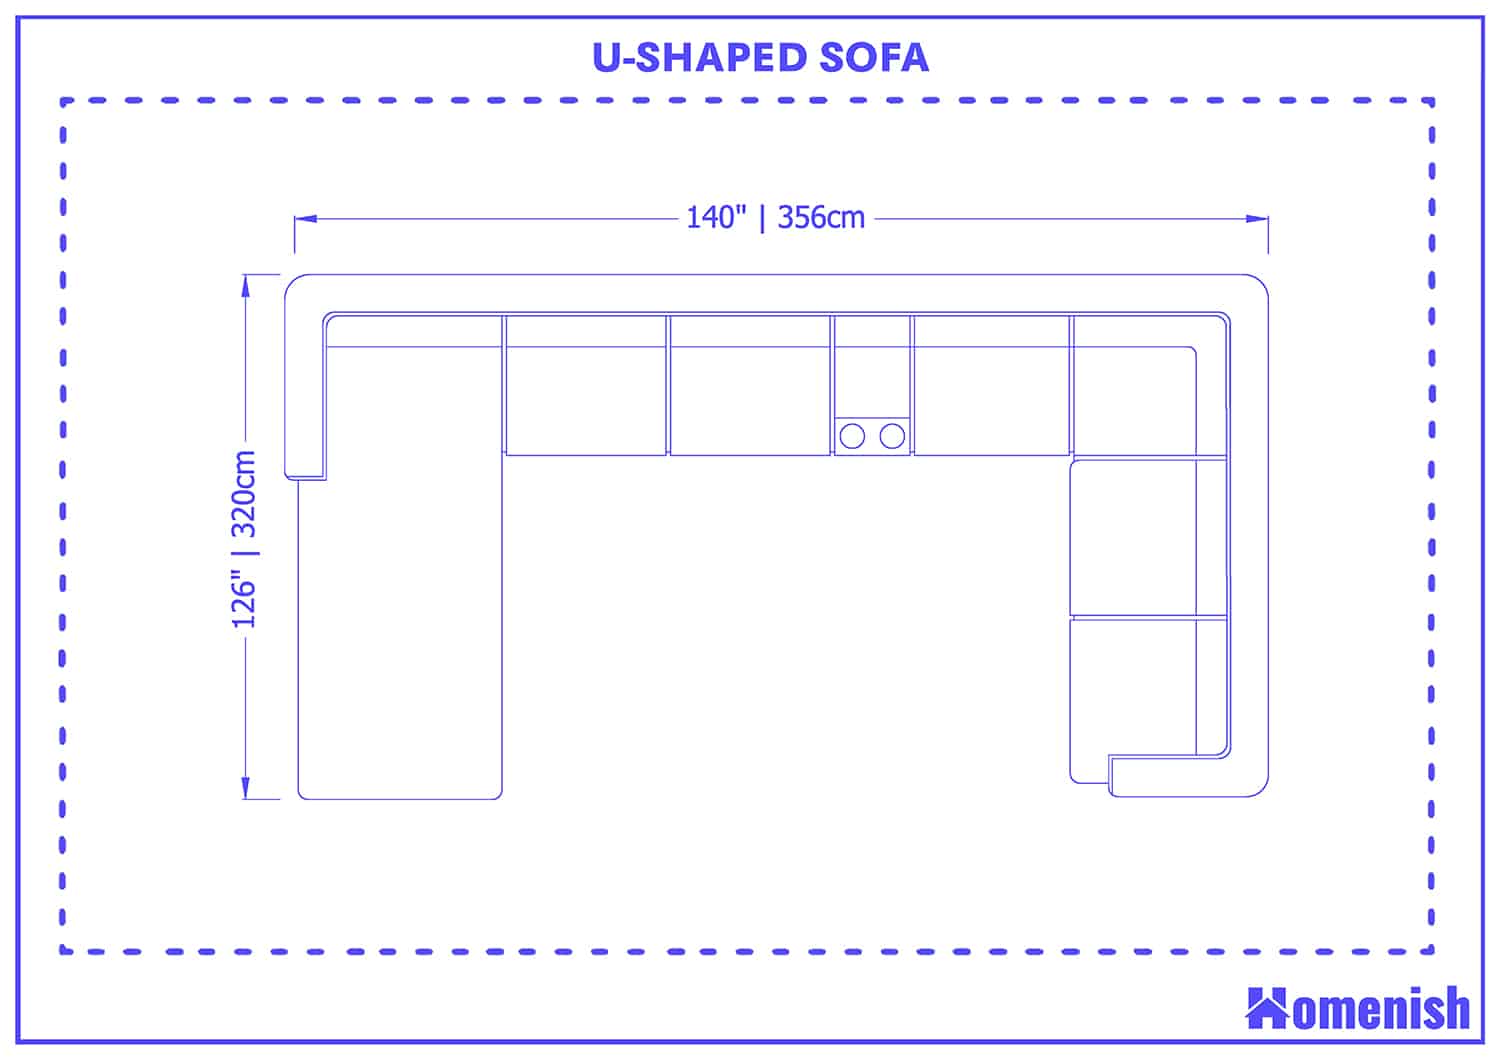 U-shaped sofa size